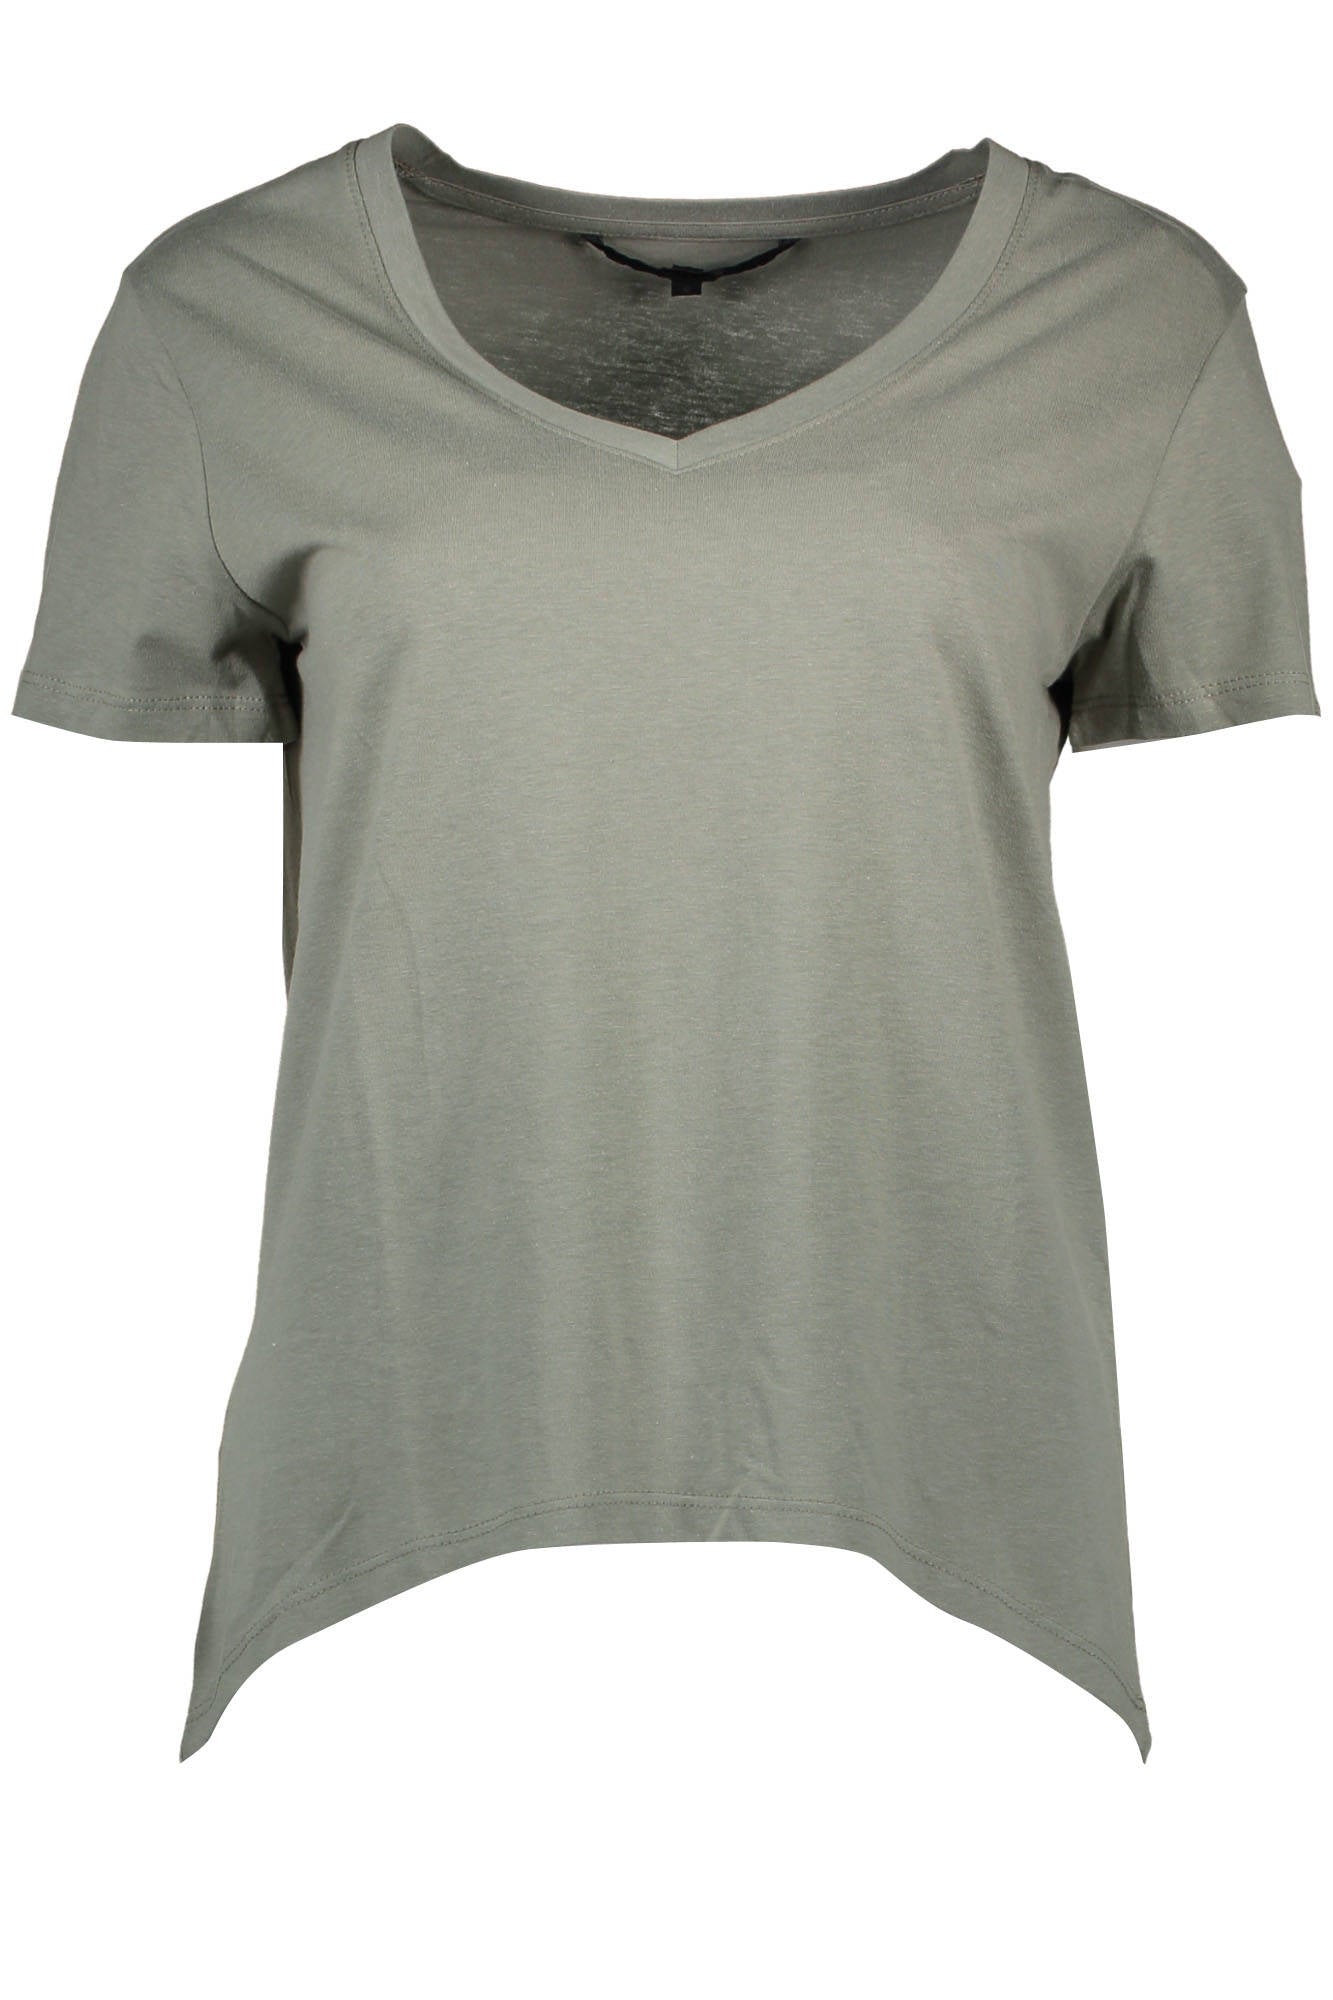 Silvian Heach Green Cotton Tops & T-Shirt - Fizigo